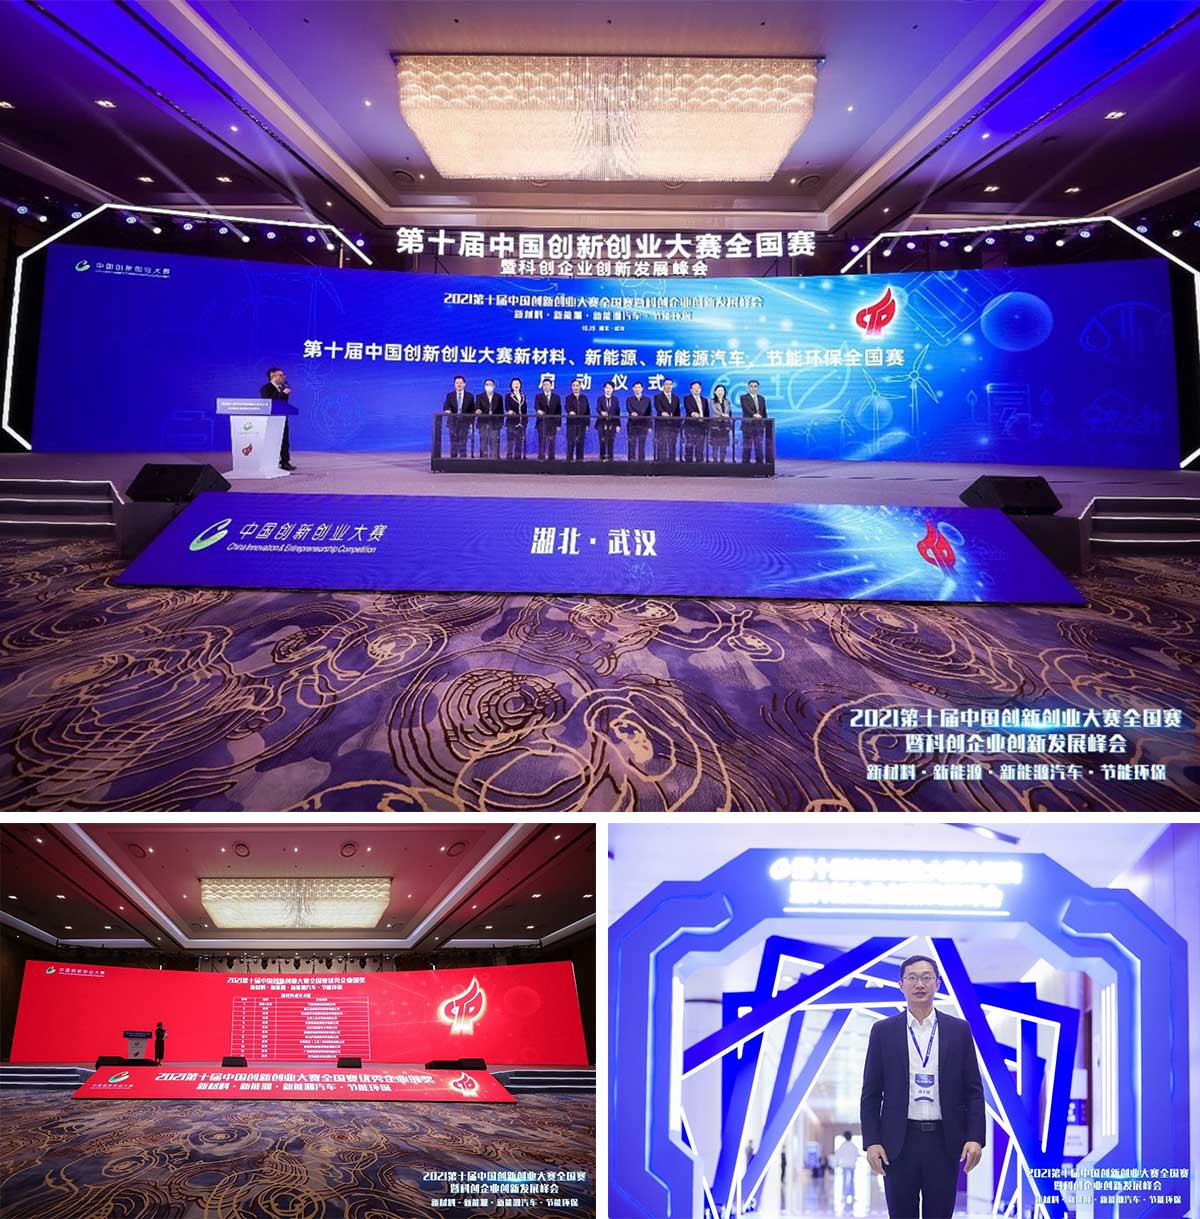 再次出征，88805tccn新蒲京喜获第十届中国创新创业大赛全国赛优秀企业奖